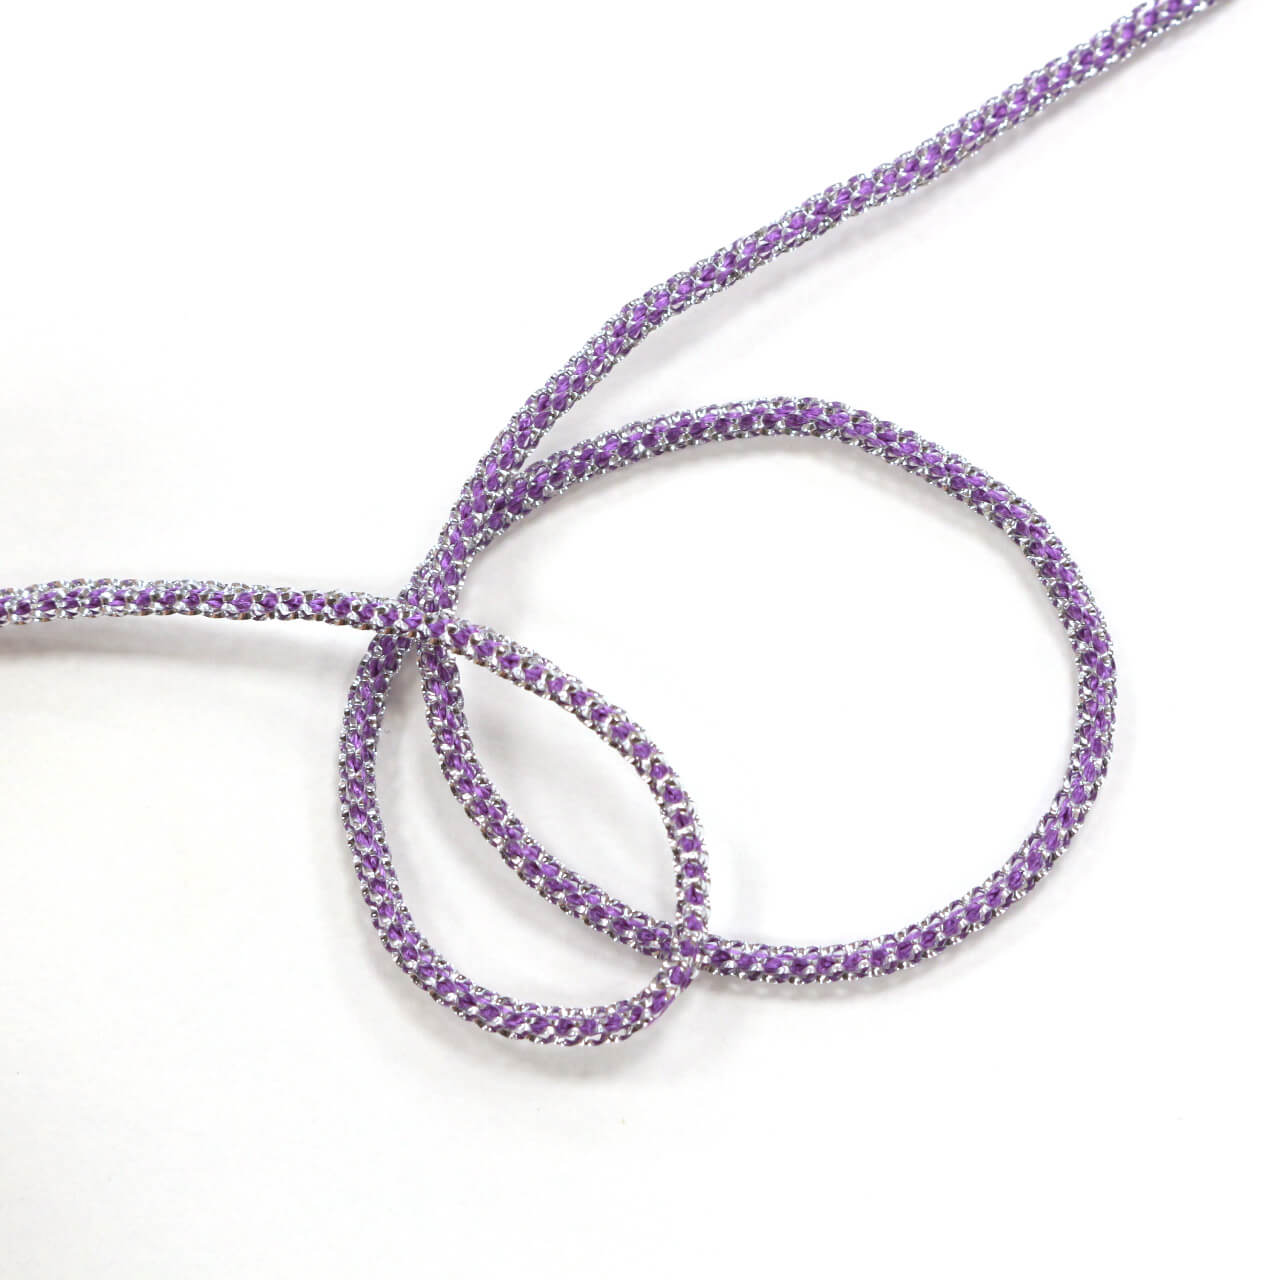 Декоративный фактурный шнур 0.2 см, цвет Фиолетовый, фото 1